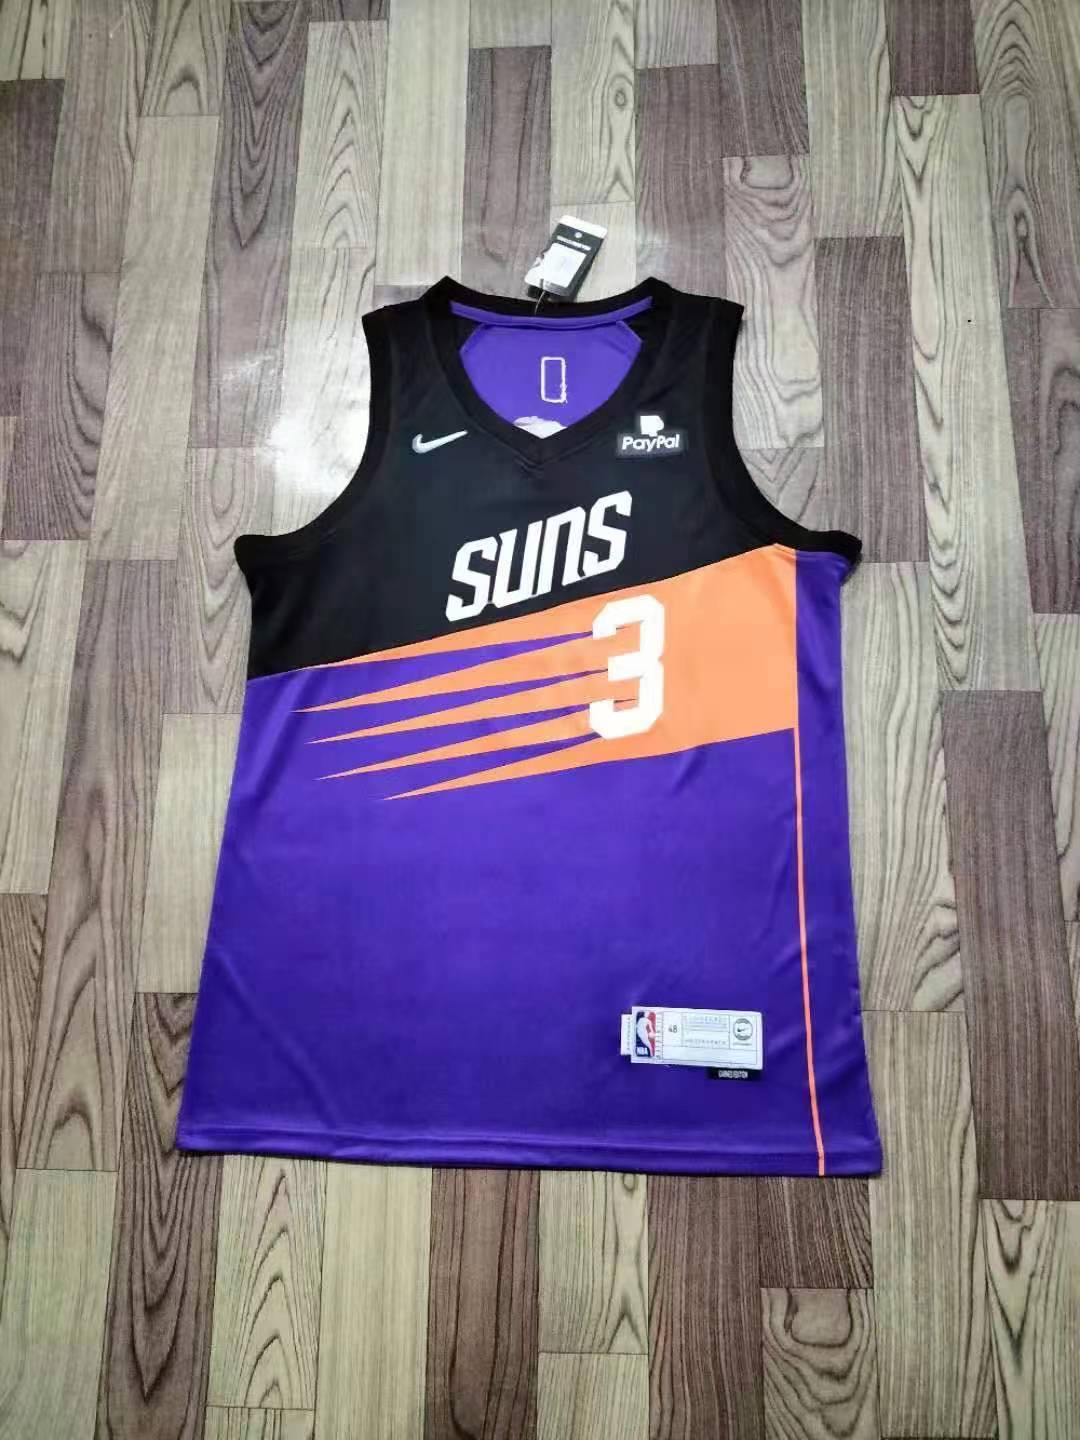 Chris Paul Phoenix Suns 2021 #3 Jersey Black City Edition men's